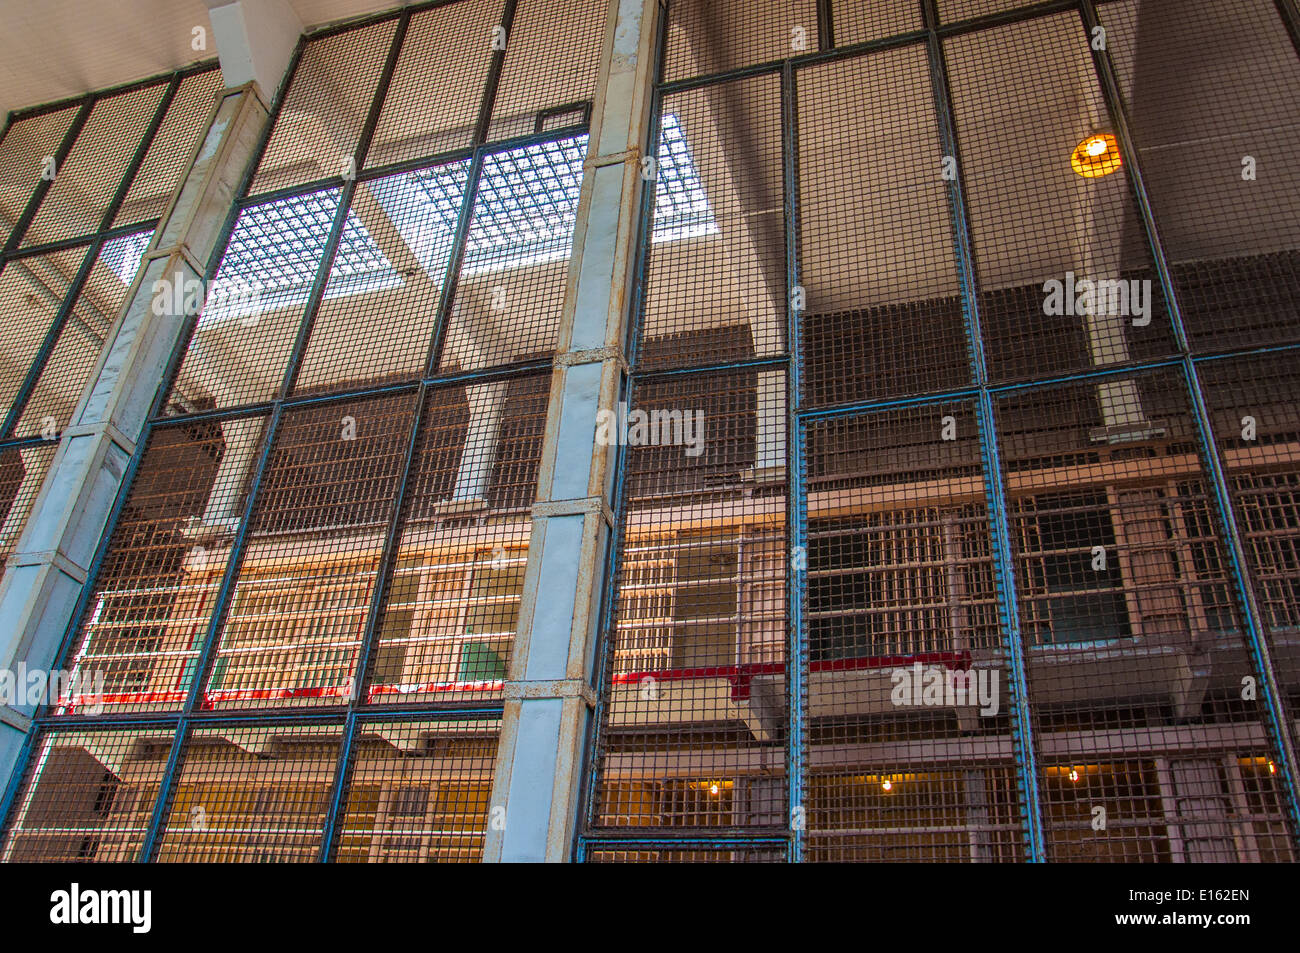 Cellgroup vue à travers une barrière de sécurité dans la prison d'Alcatraz Banque D'Images